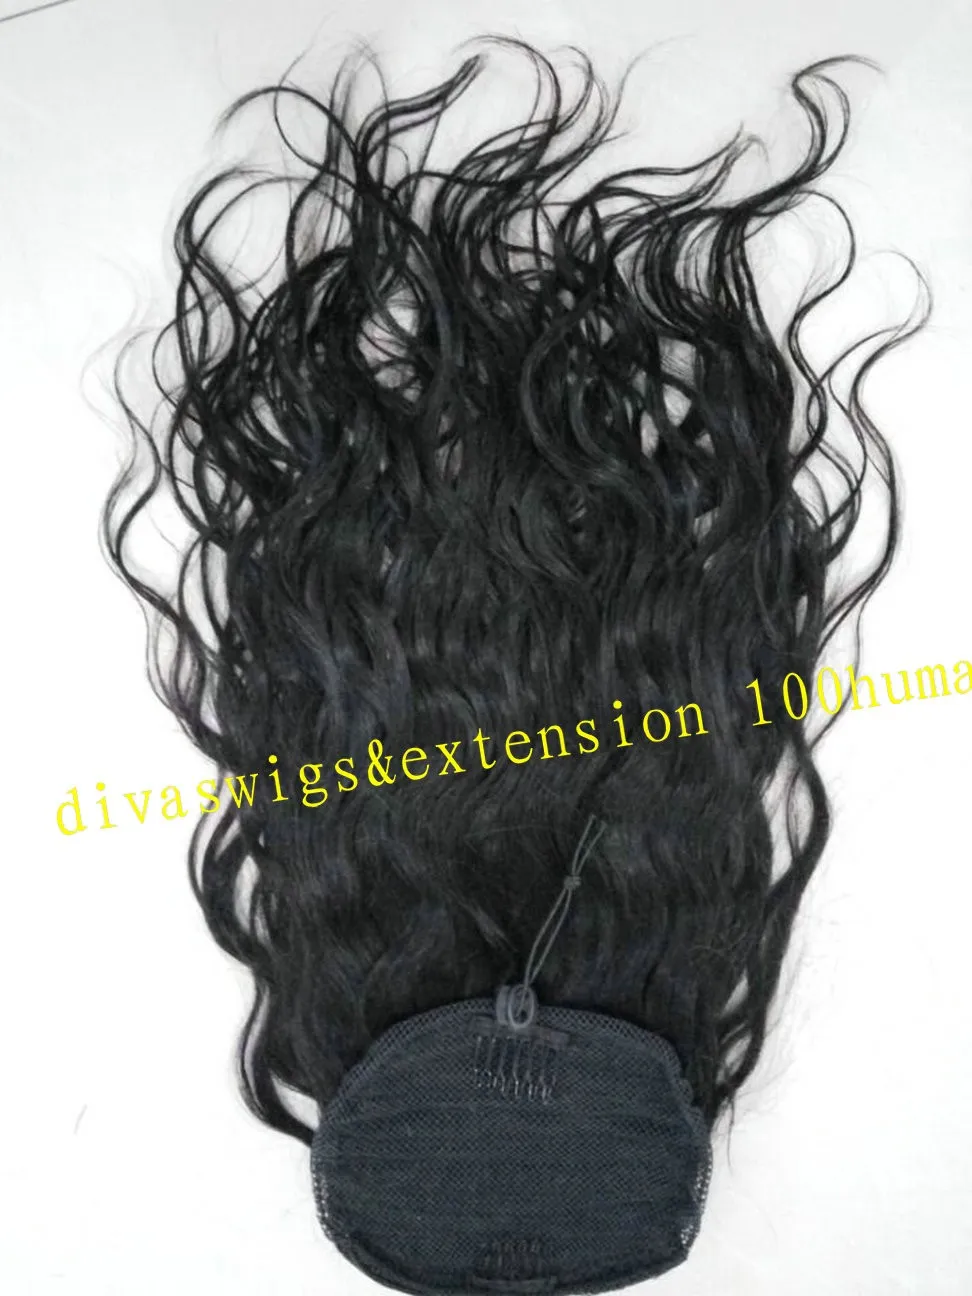 140г черные женщины волнистые хвостик прическа клип ИИН бразильский Реми наращивание волос клип в расширении пони хвост человеческих волос шнурок хвост